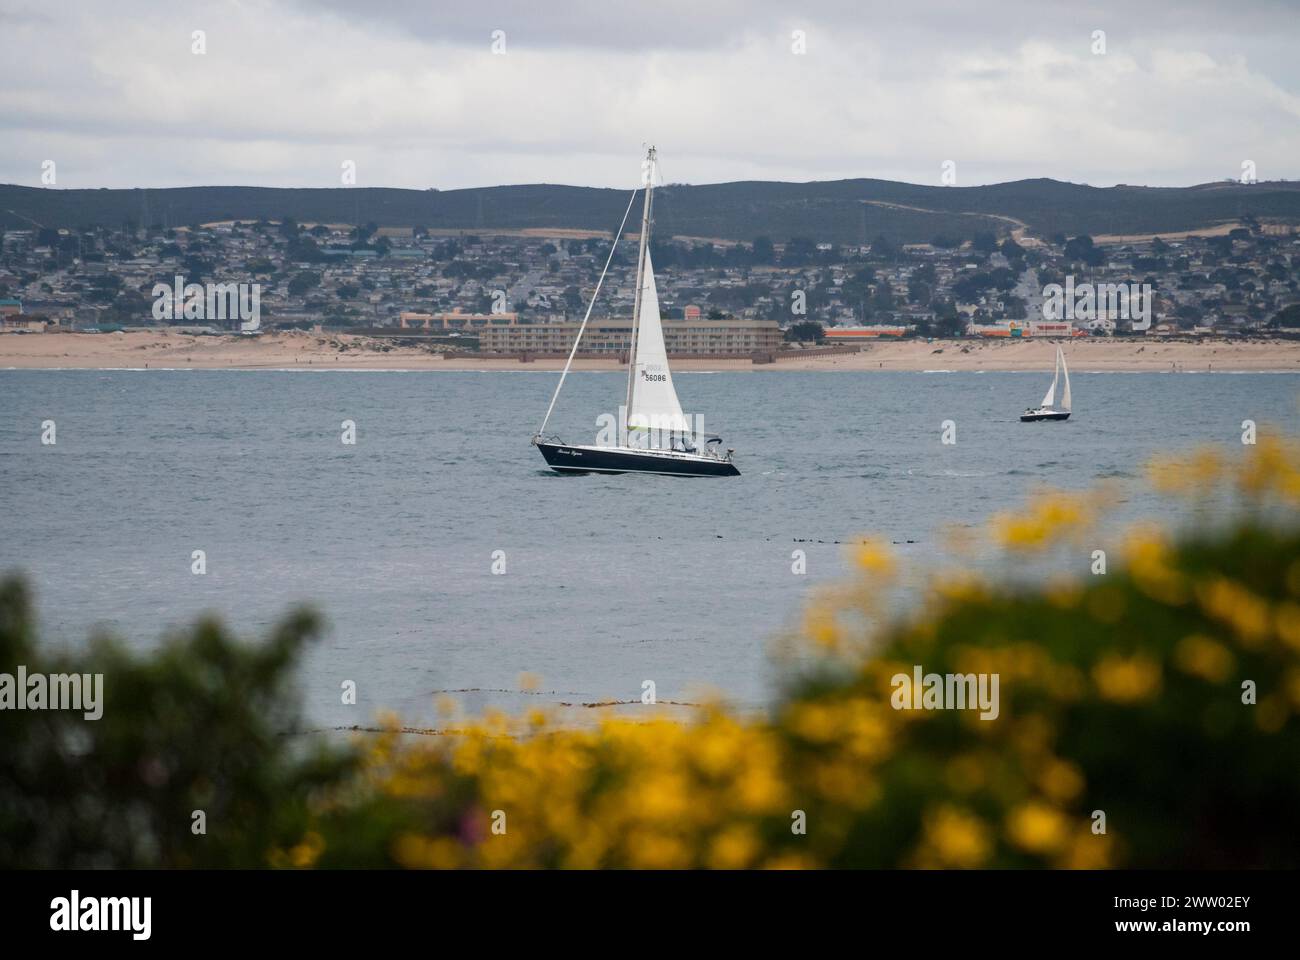 Un voilier traverse la baie de Monterey avec la communauté et les plages de Monterey et Seaside au loin, encadrées par des fleurs jaunes au premier plan. Banque D'Images